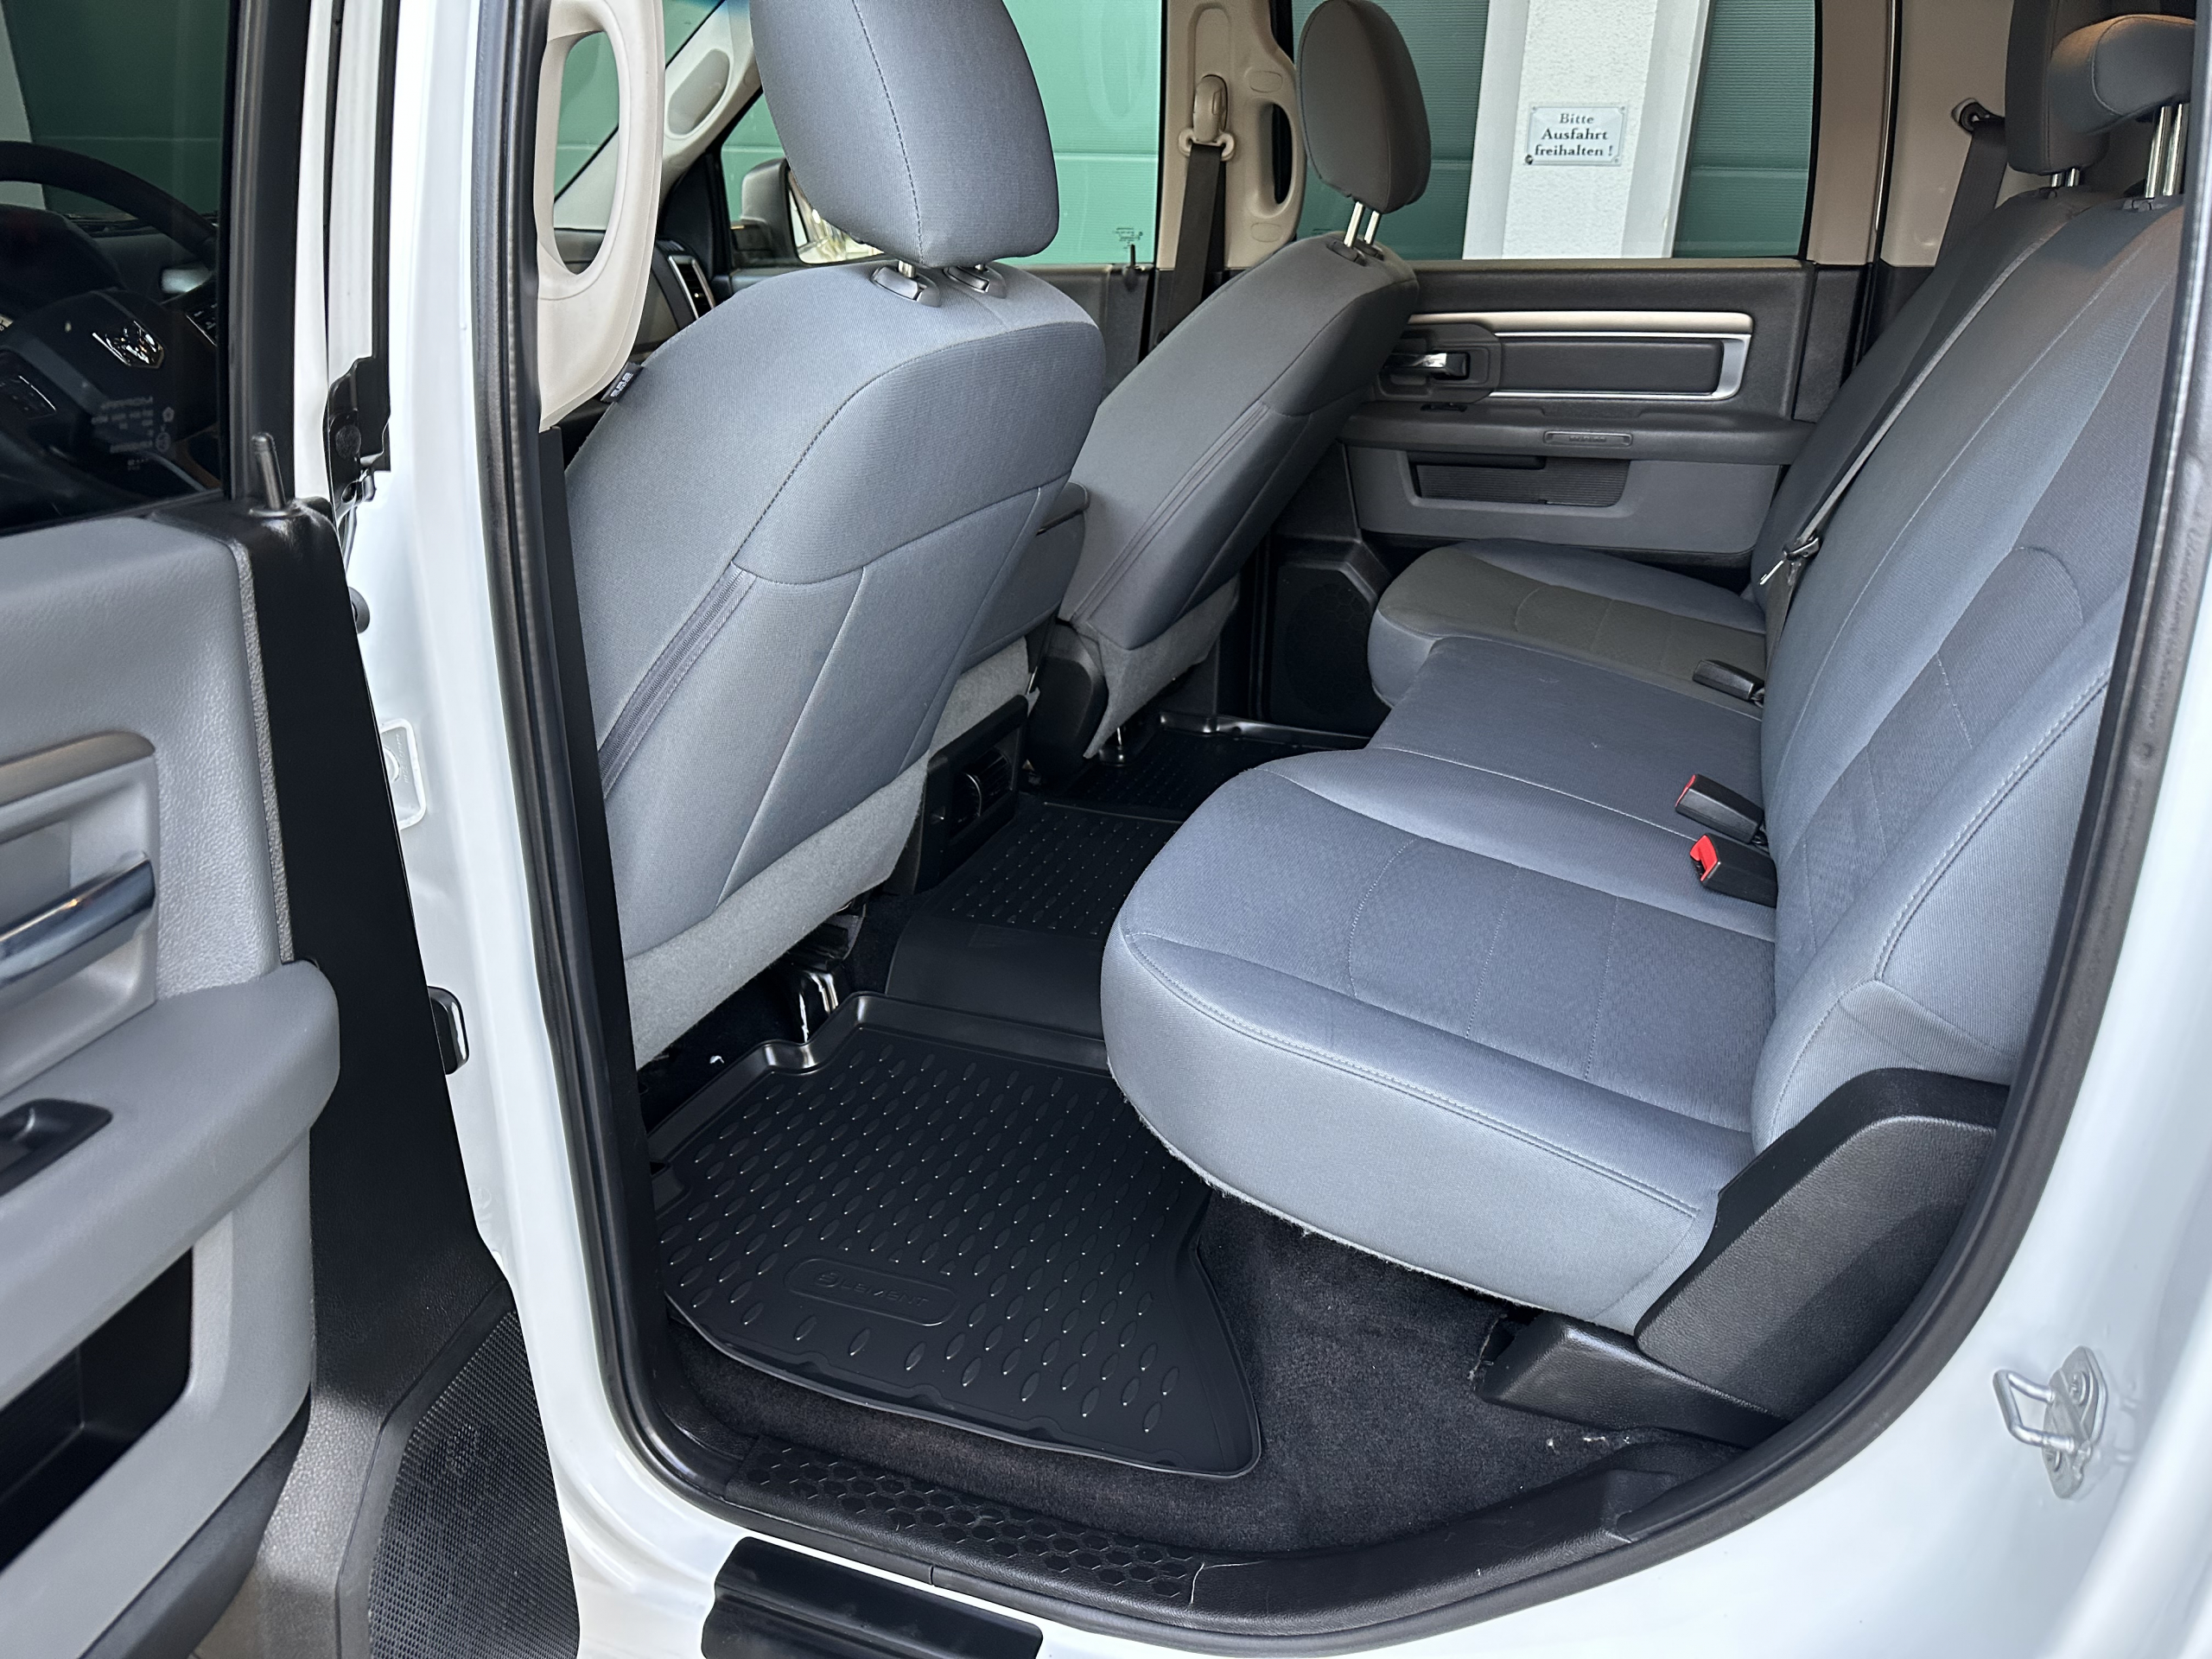 2019 Dodge Ram 1500 Crew Cab à vendre à Toulouse